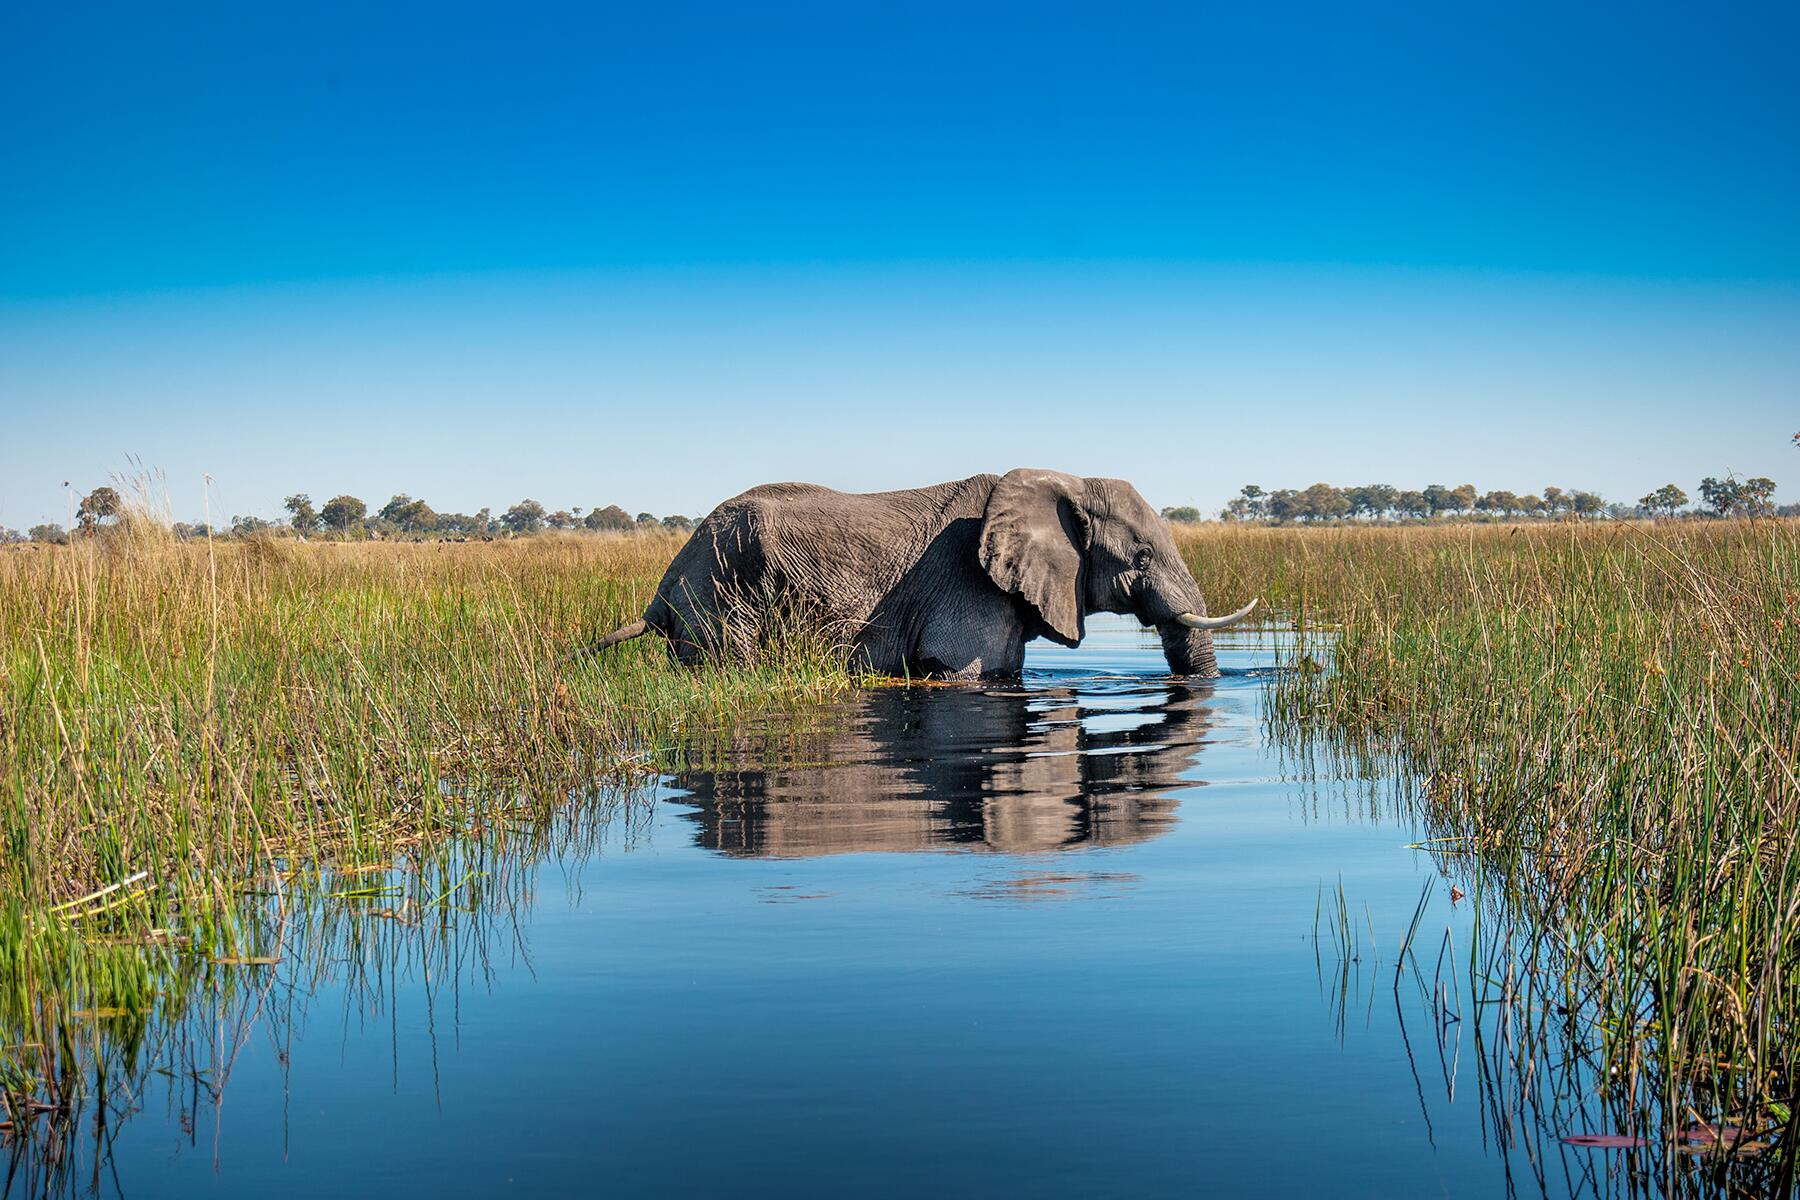 세계 최고 휴양지 오카방고 델타 습지대에 서식하는 빅5 중에 하나인 코끼리